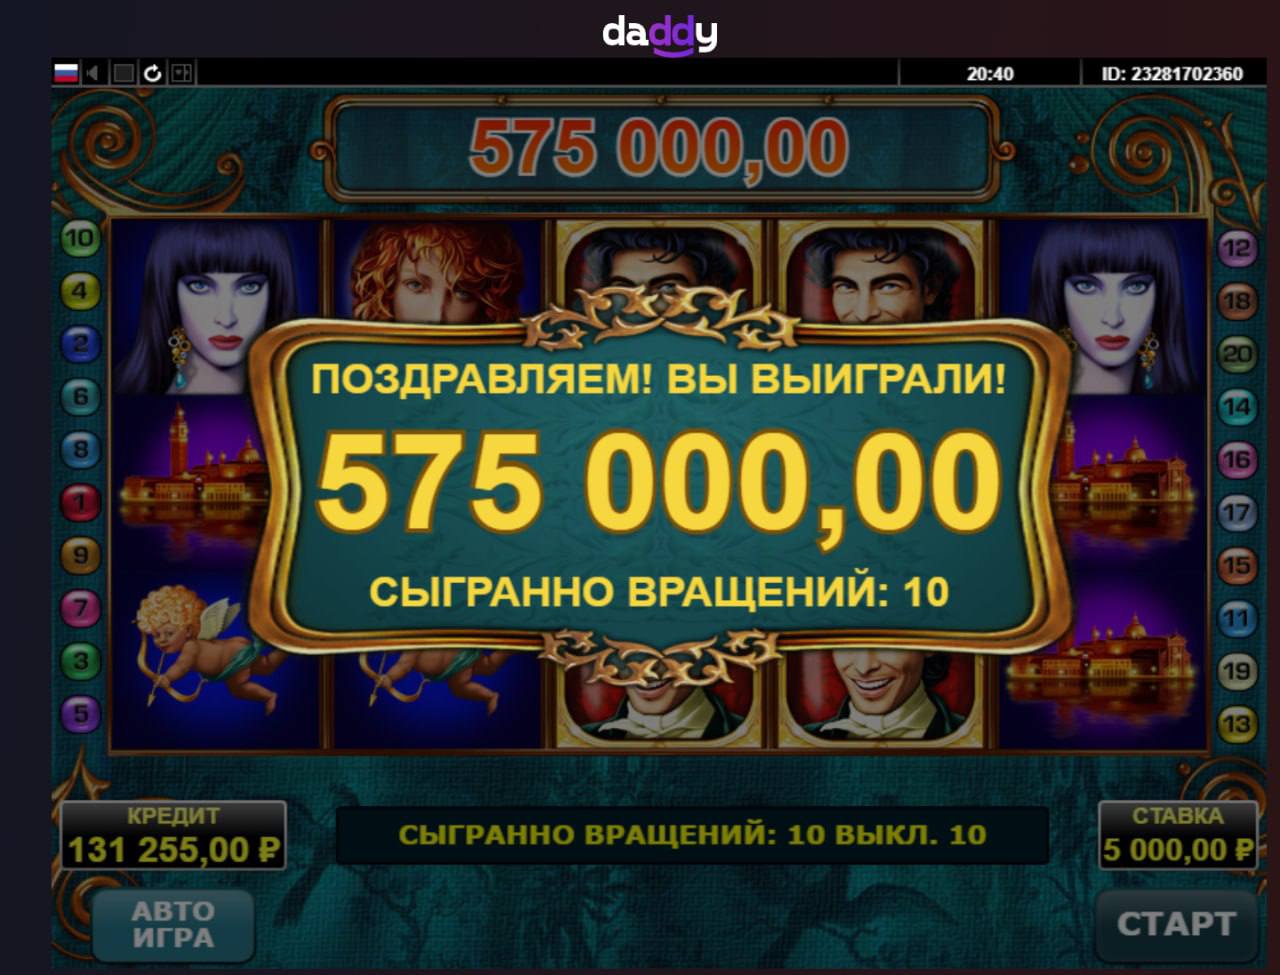 Daddy casino вход daddy casinos org ru. Daddy Casino 982.